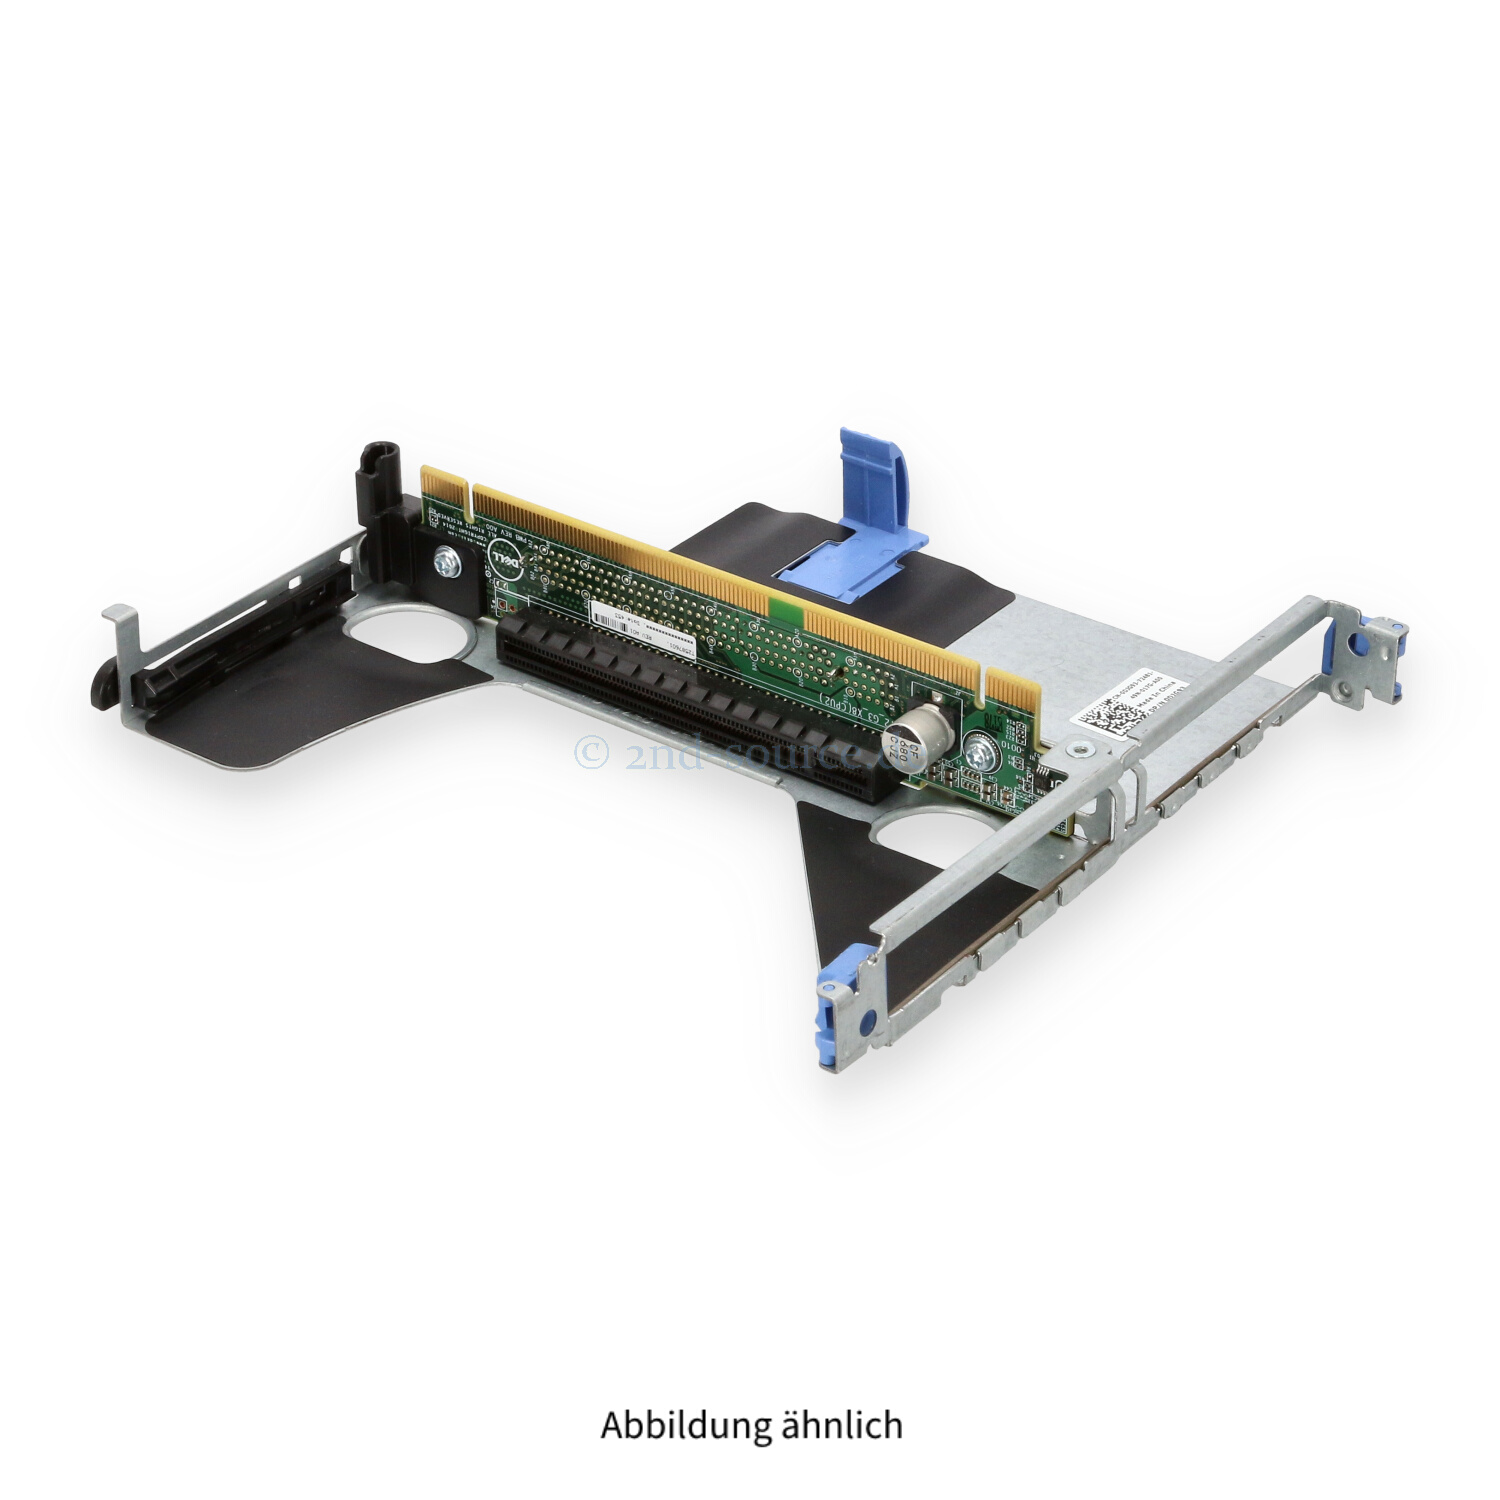 Dell 2x8 PCI Riser 1 PowerEdge R630 DJG93 0DJG93